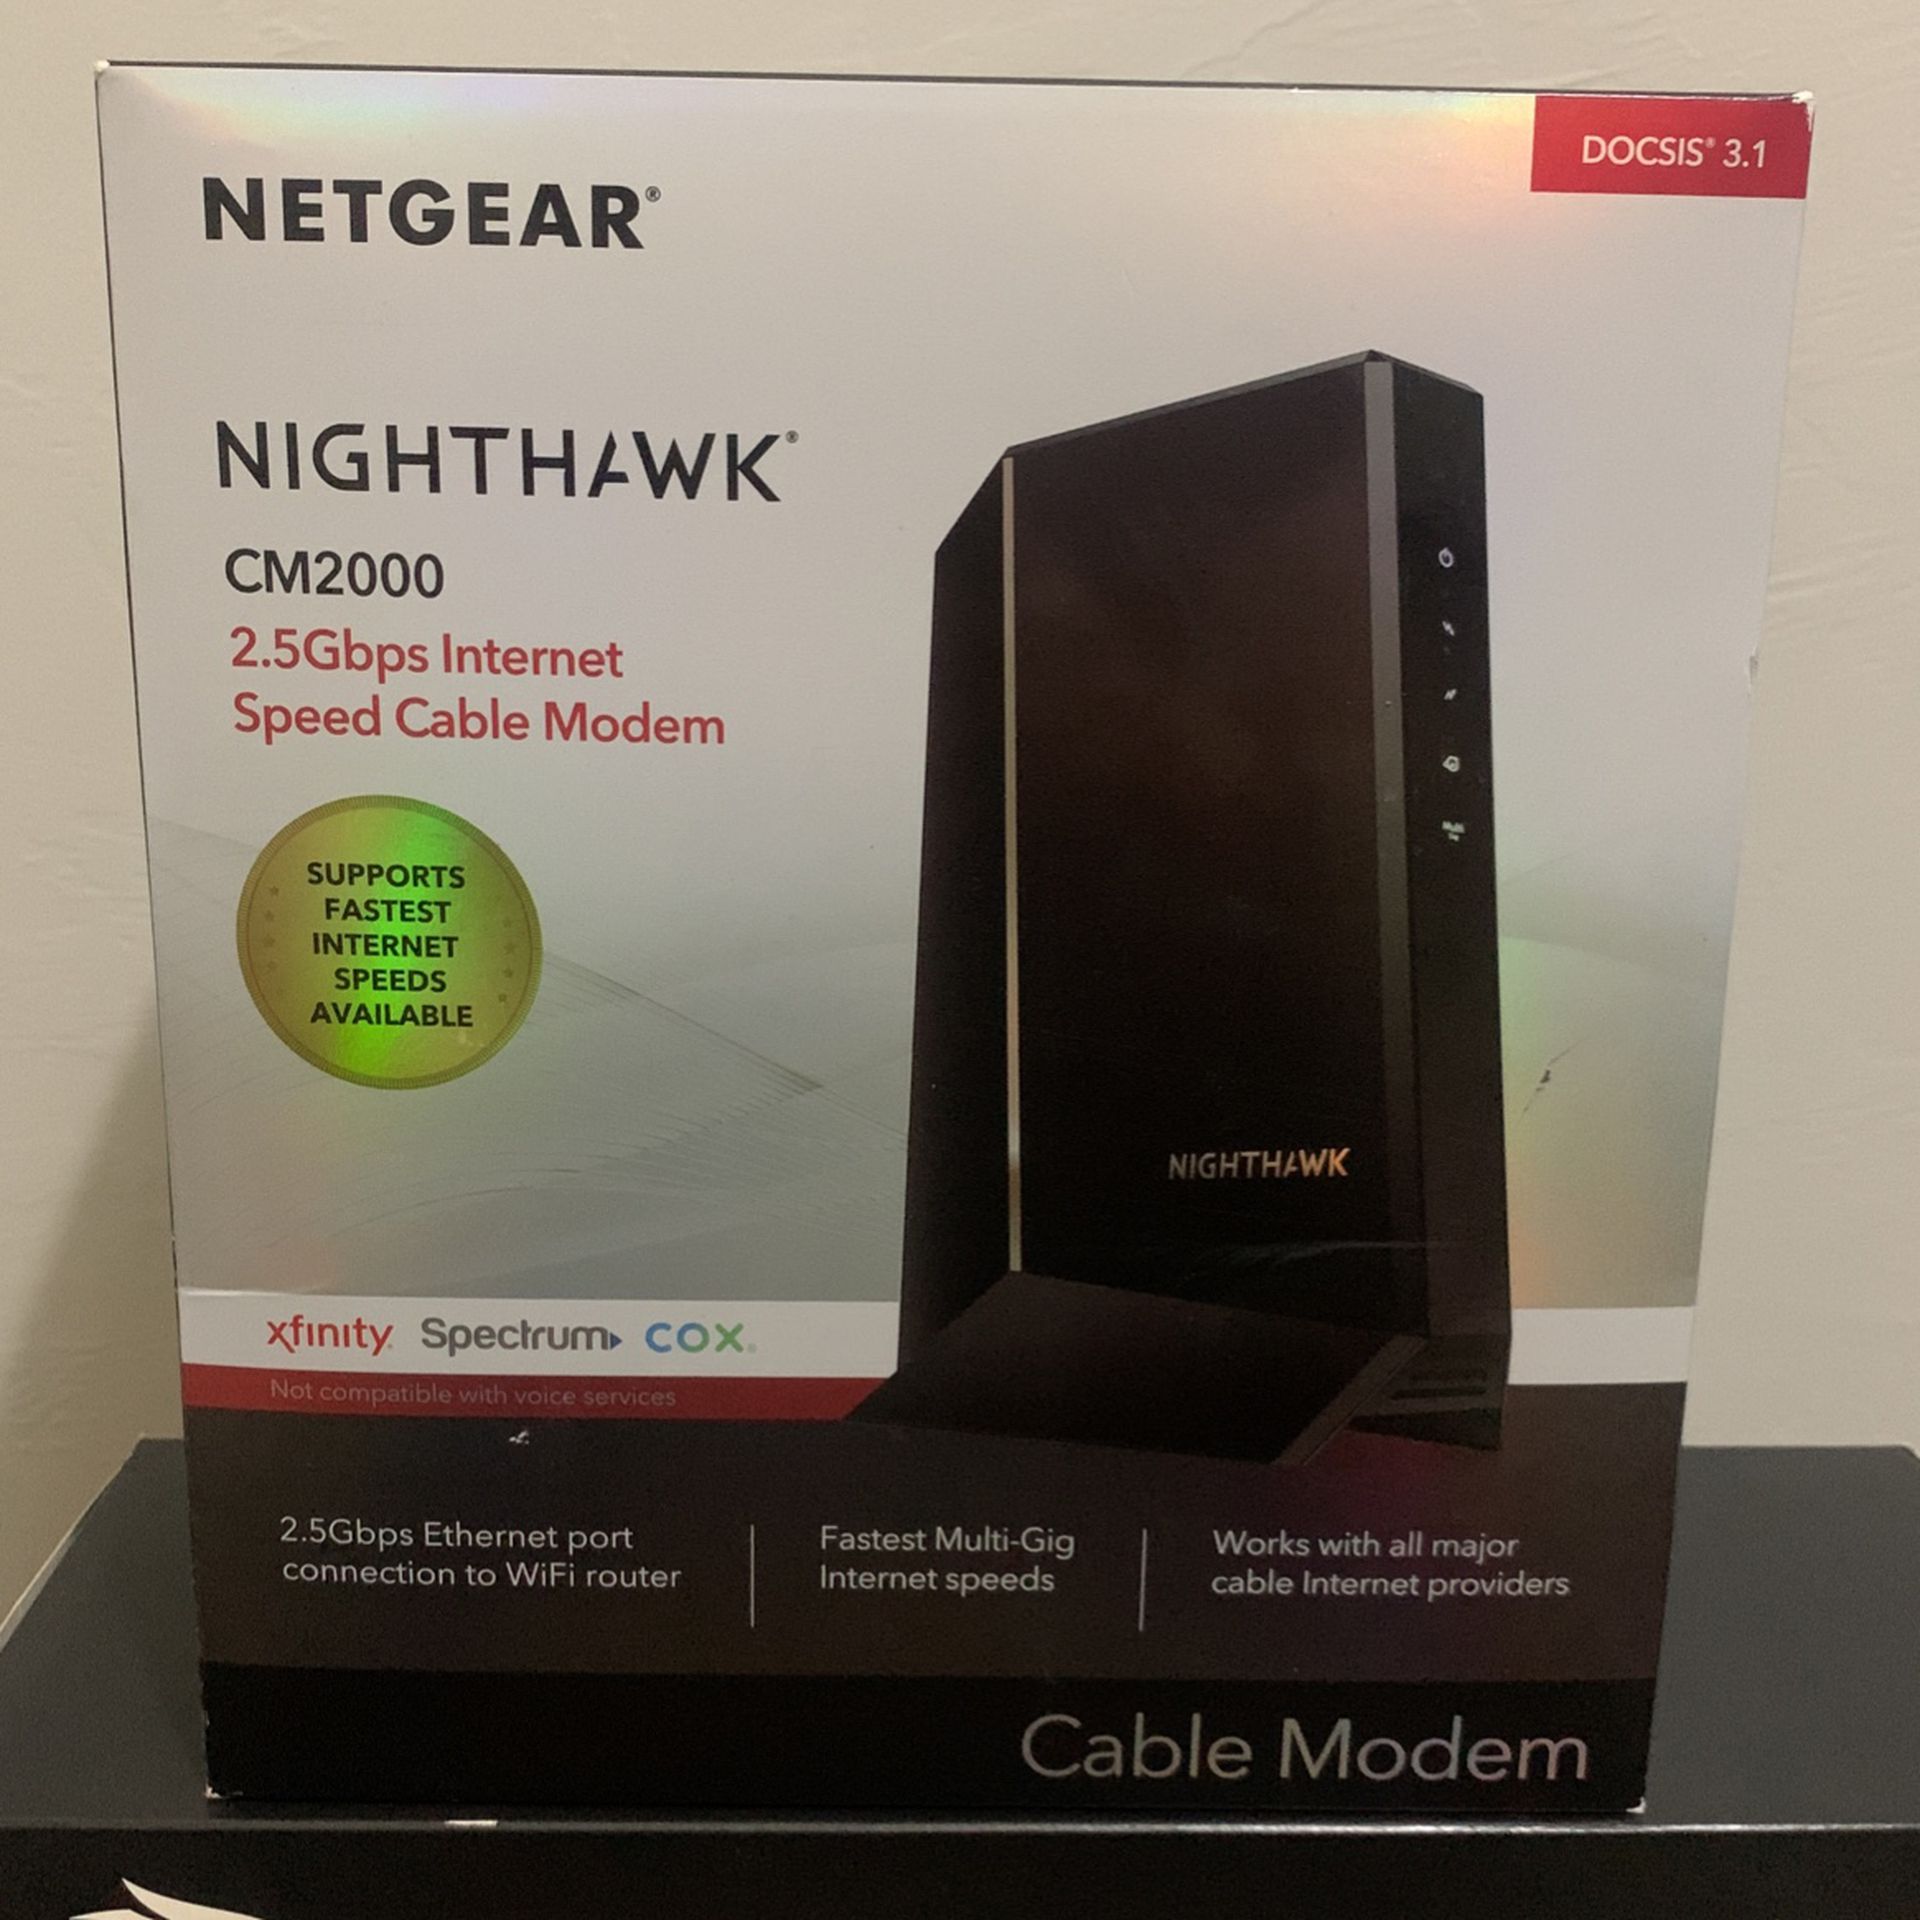 NETGEAR NIGHTHAWK CM2000